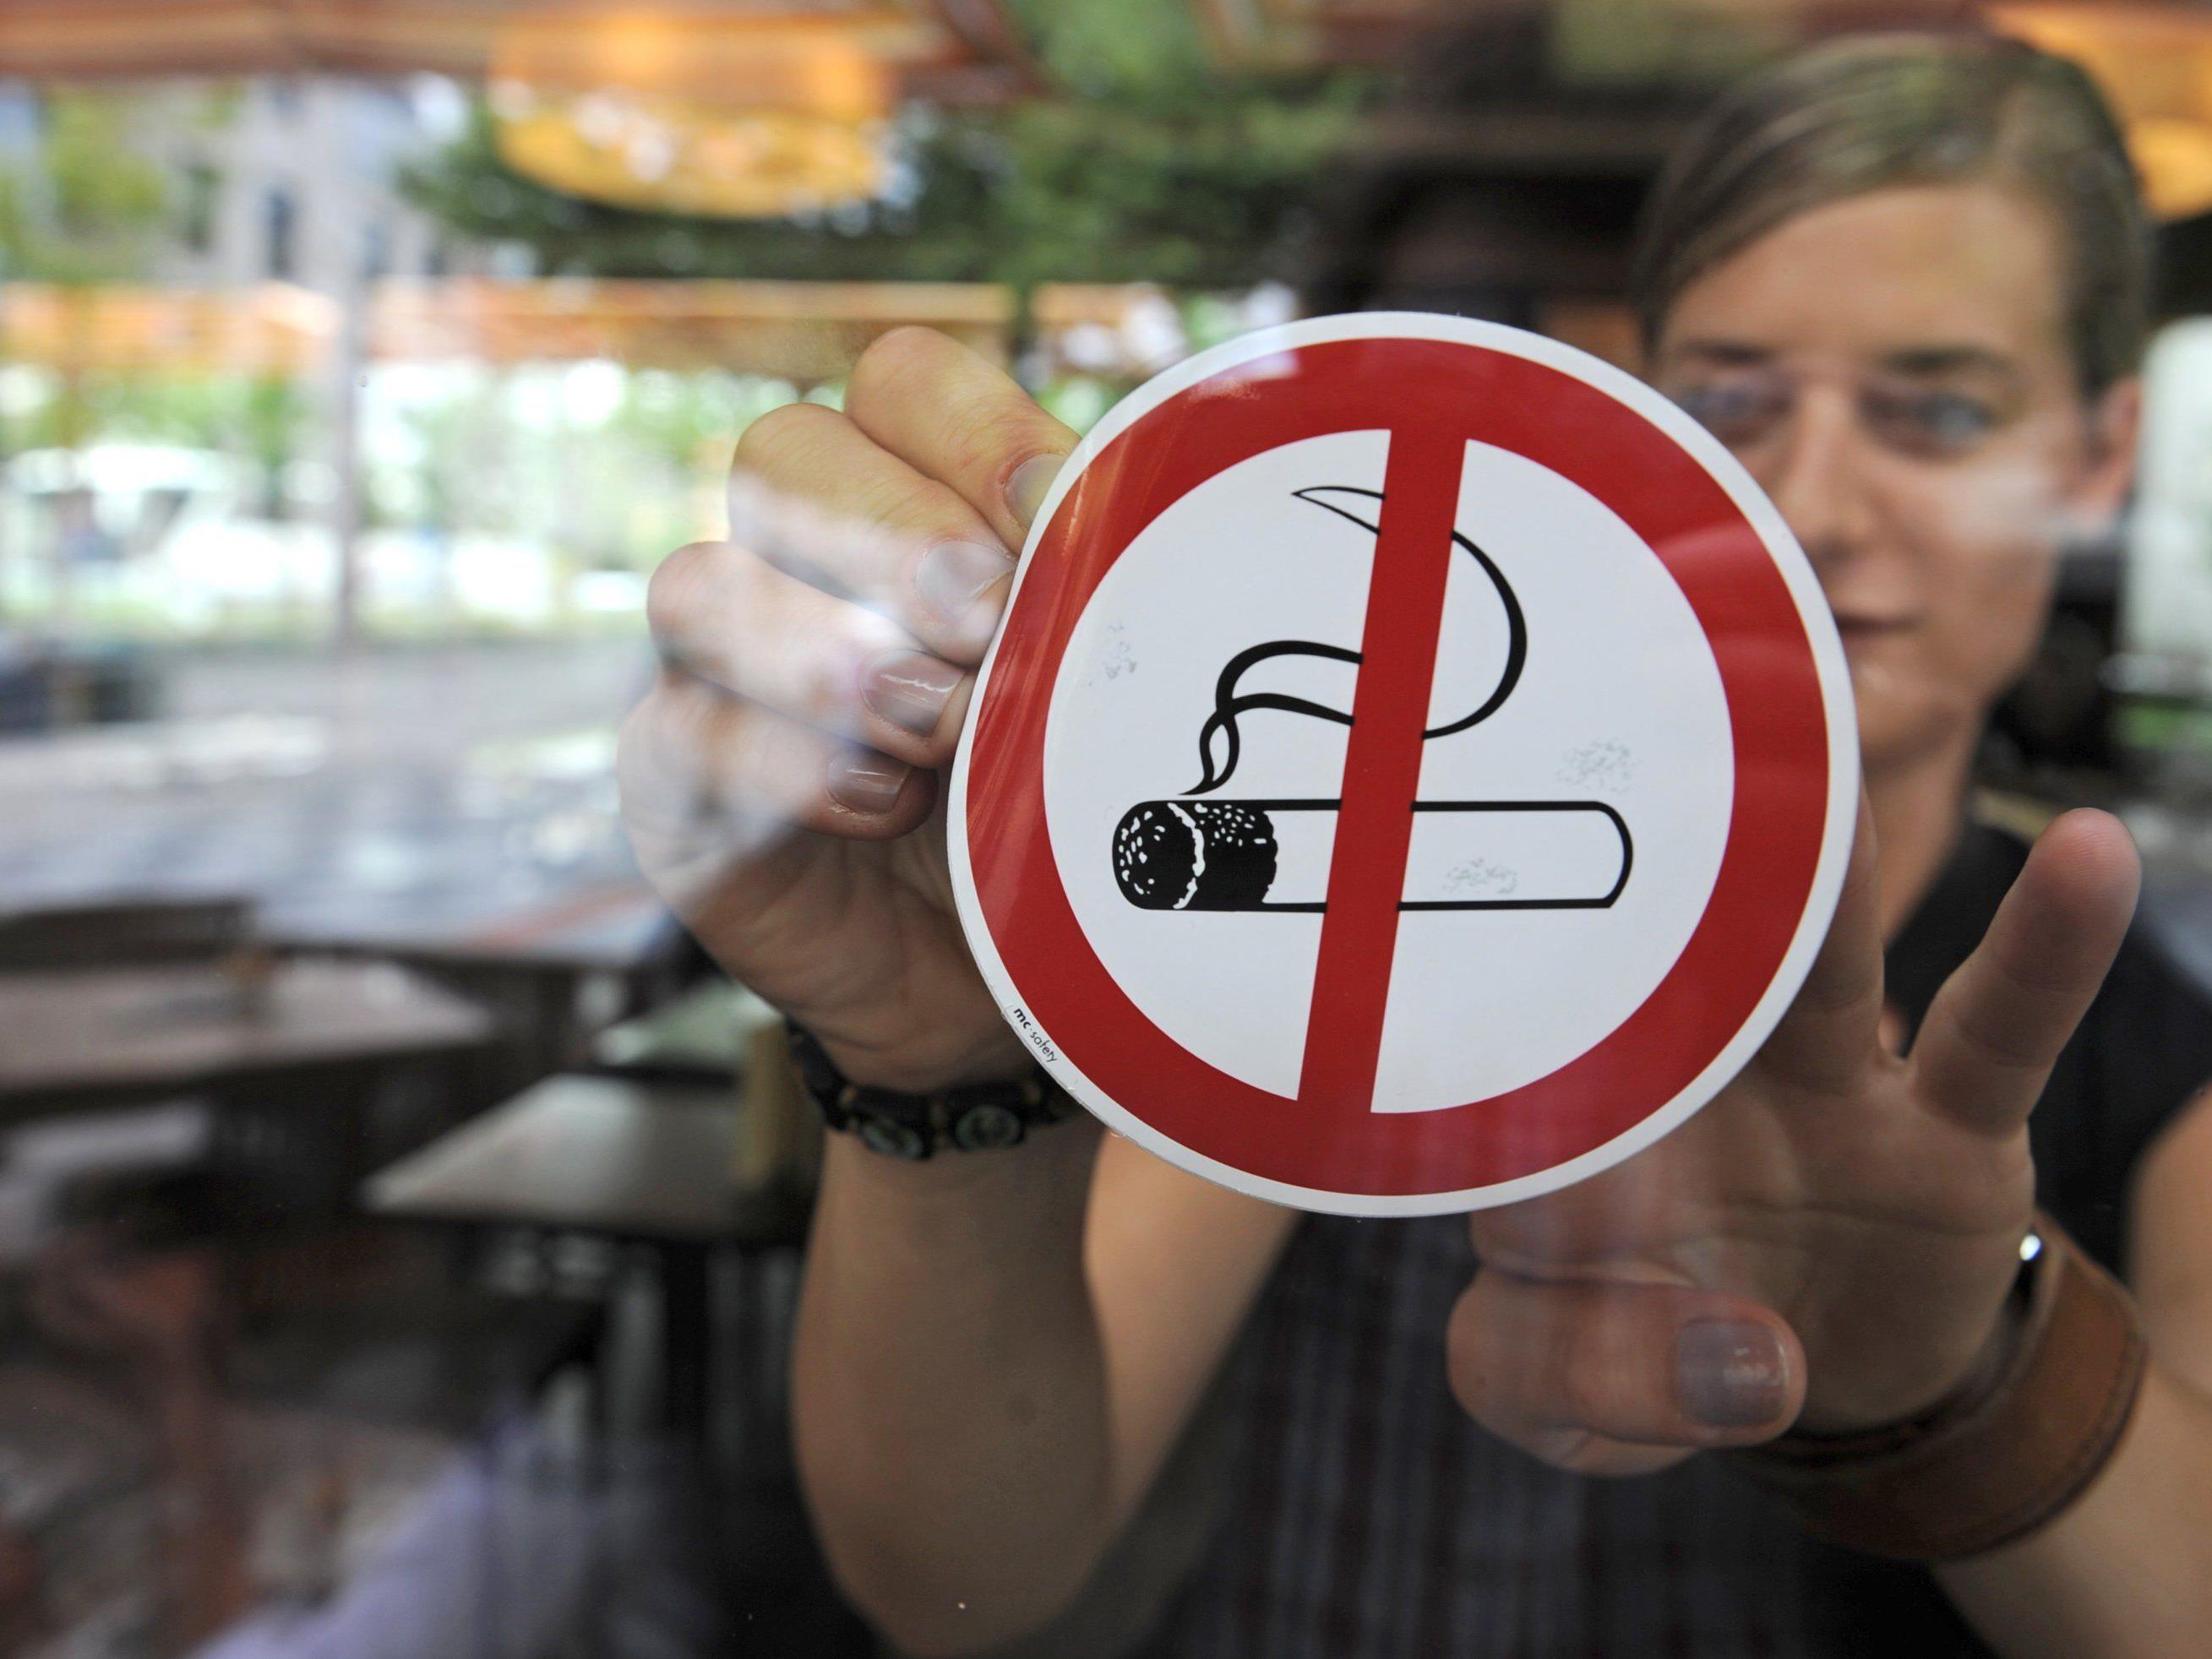 Vorarlbergs Gastronomen sind beim Rauchverbot verschiedener Meinung